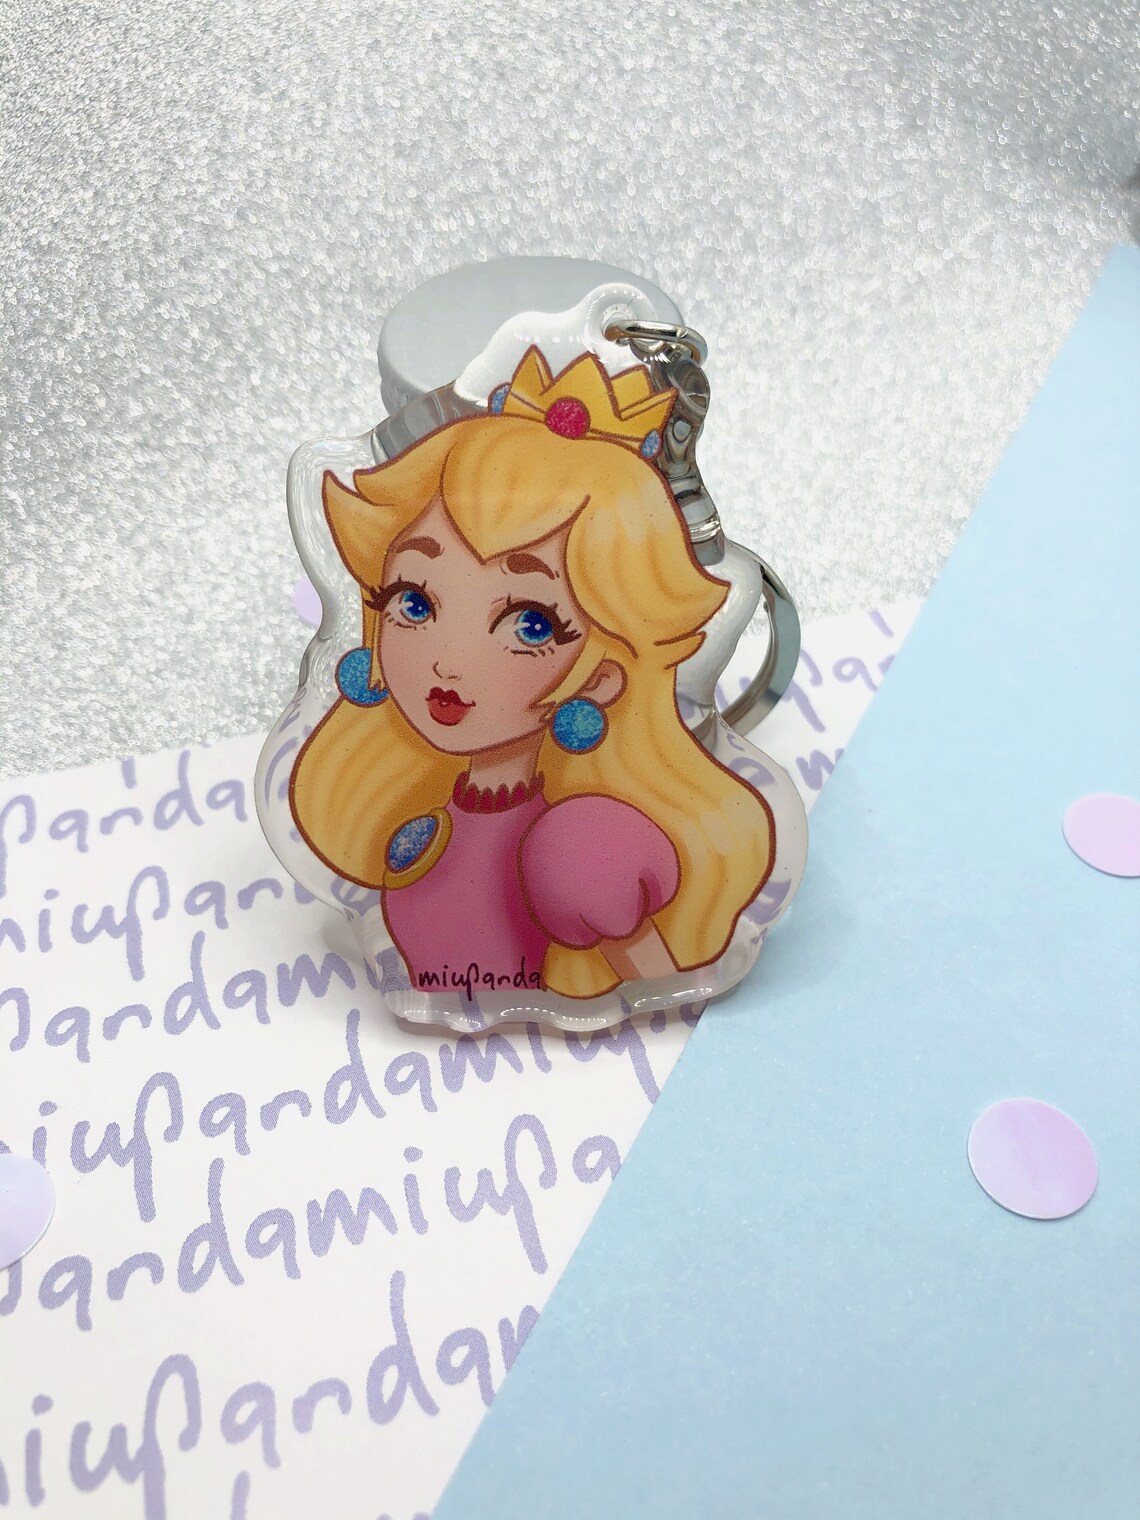 Princess Peach Cute Keychain Glitter Epoxy Keychain Mario Bros | Etsy